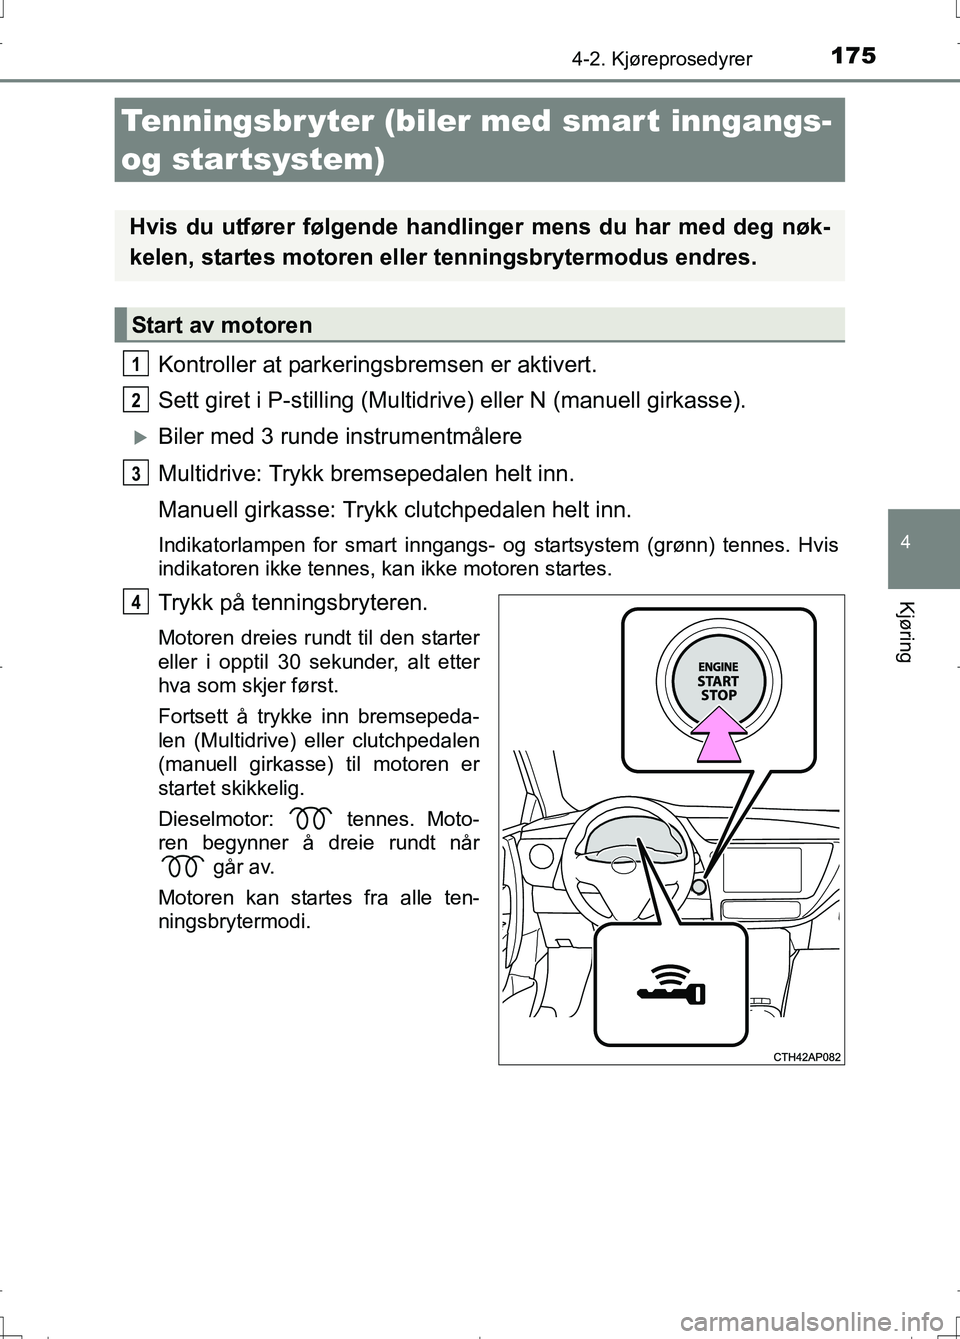 TOYOTA AURIS 2016  Instruksjoner for bruk (in Norwegian) 1754-2. Kjøreprosedyrer
OM12J31NO
4
Kjøring
Kontroller at parkeringsbremsen er aktivert.
Sett giret i P-stilling (Multidr ive) eller N (manuell girkasse).
Biler med 3 runde instrumentmålere
Mult